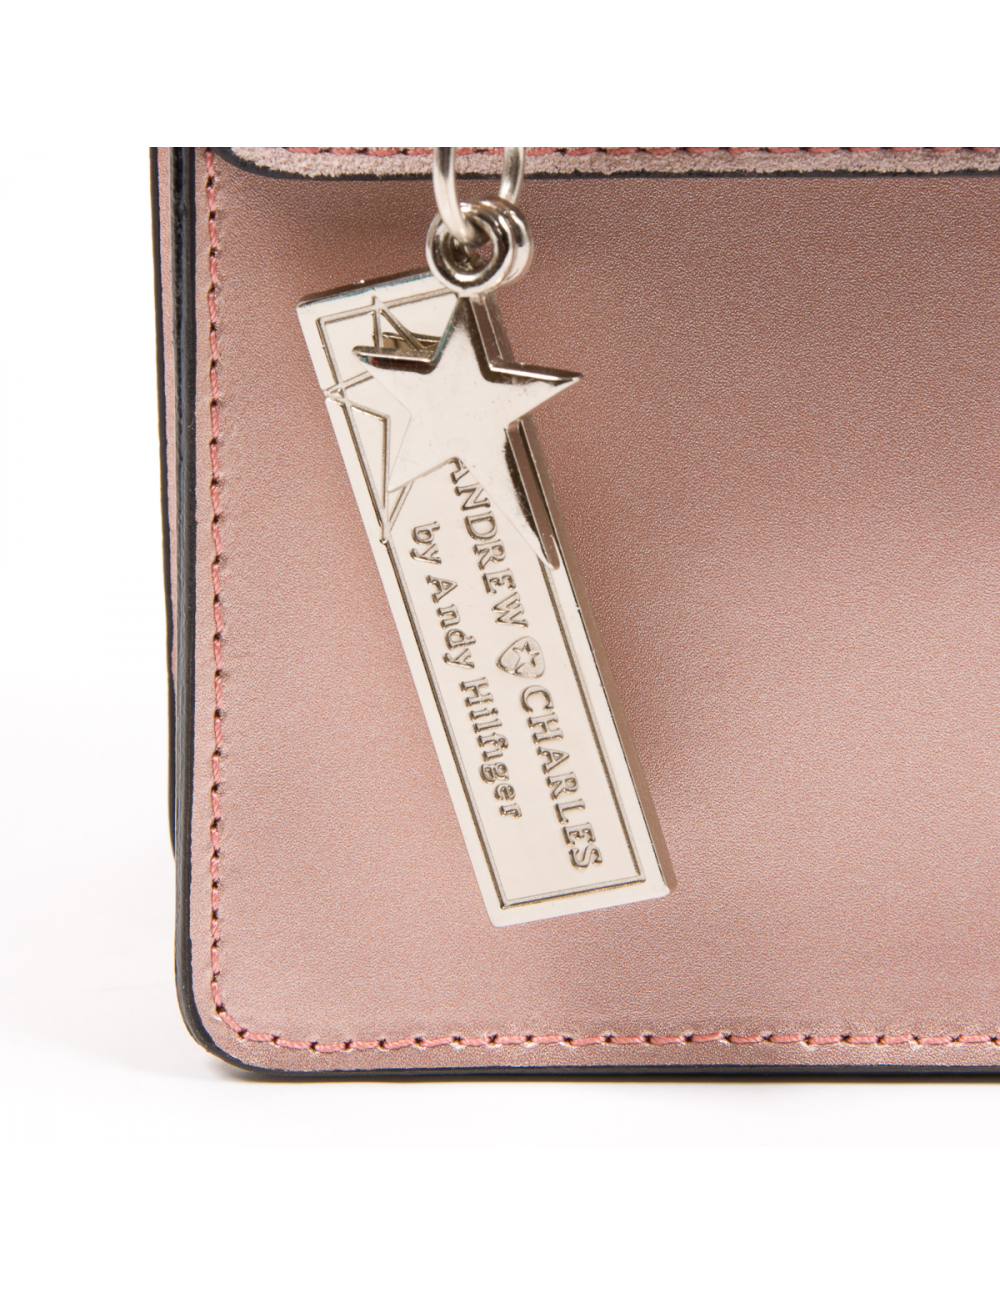 Andrew Charles Womens Handbag Pink RING - YuppyCollections